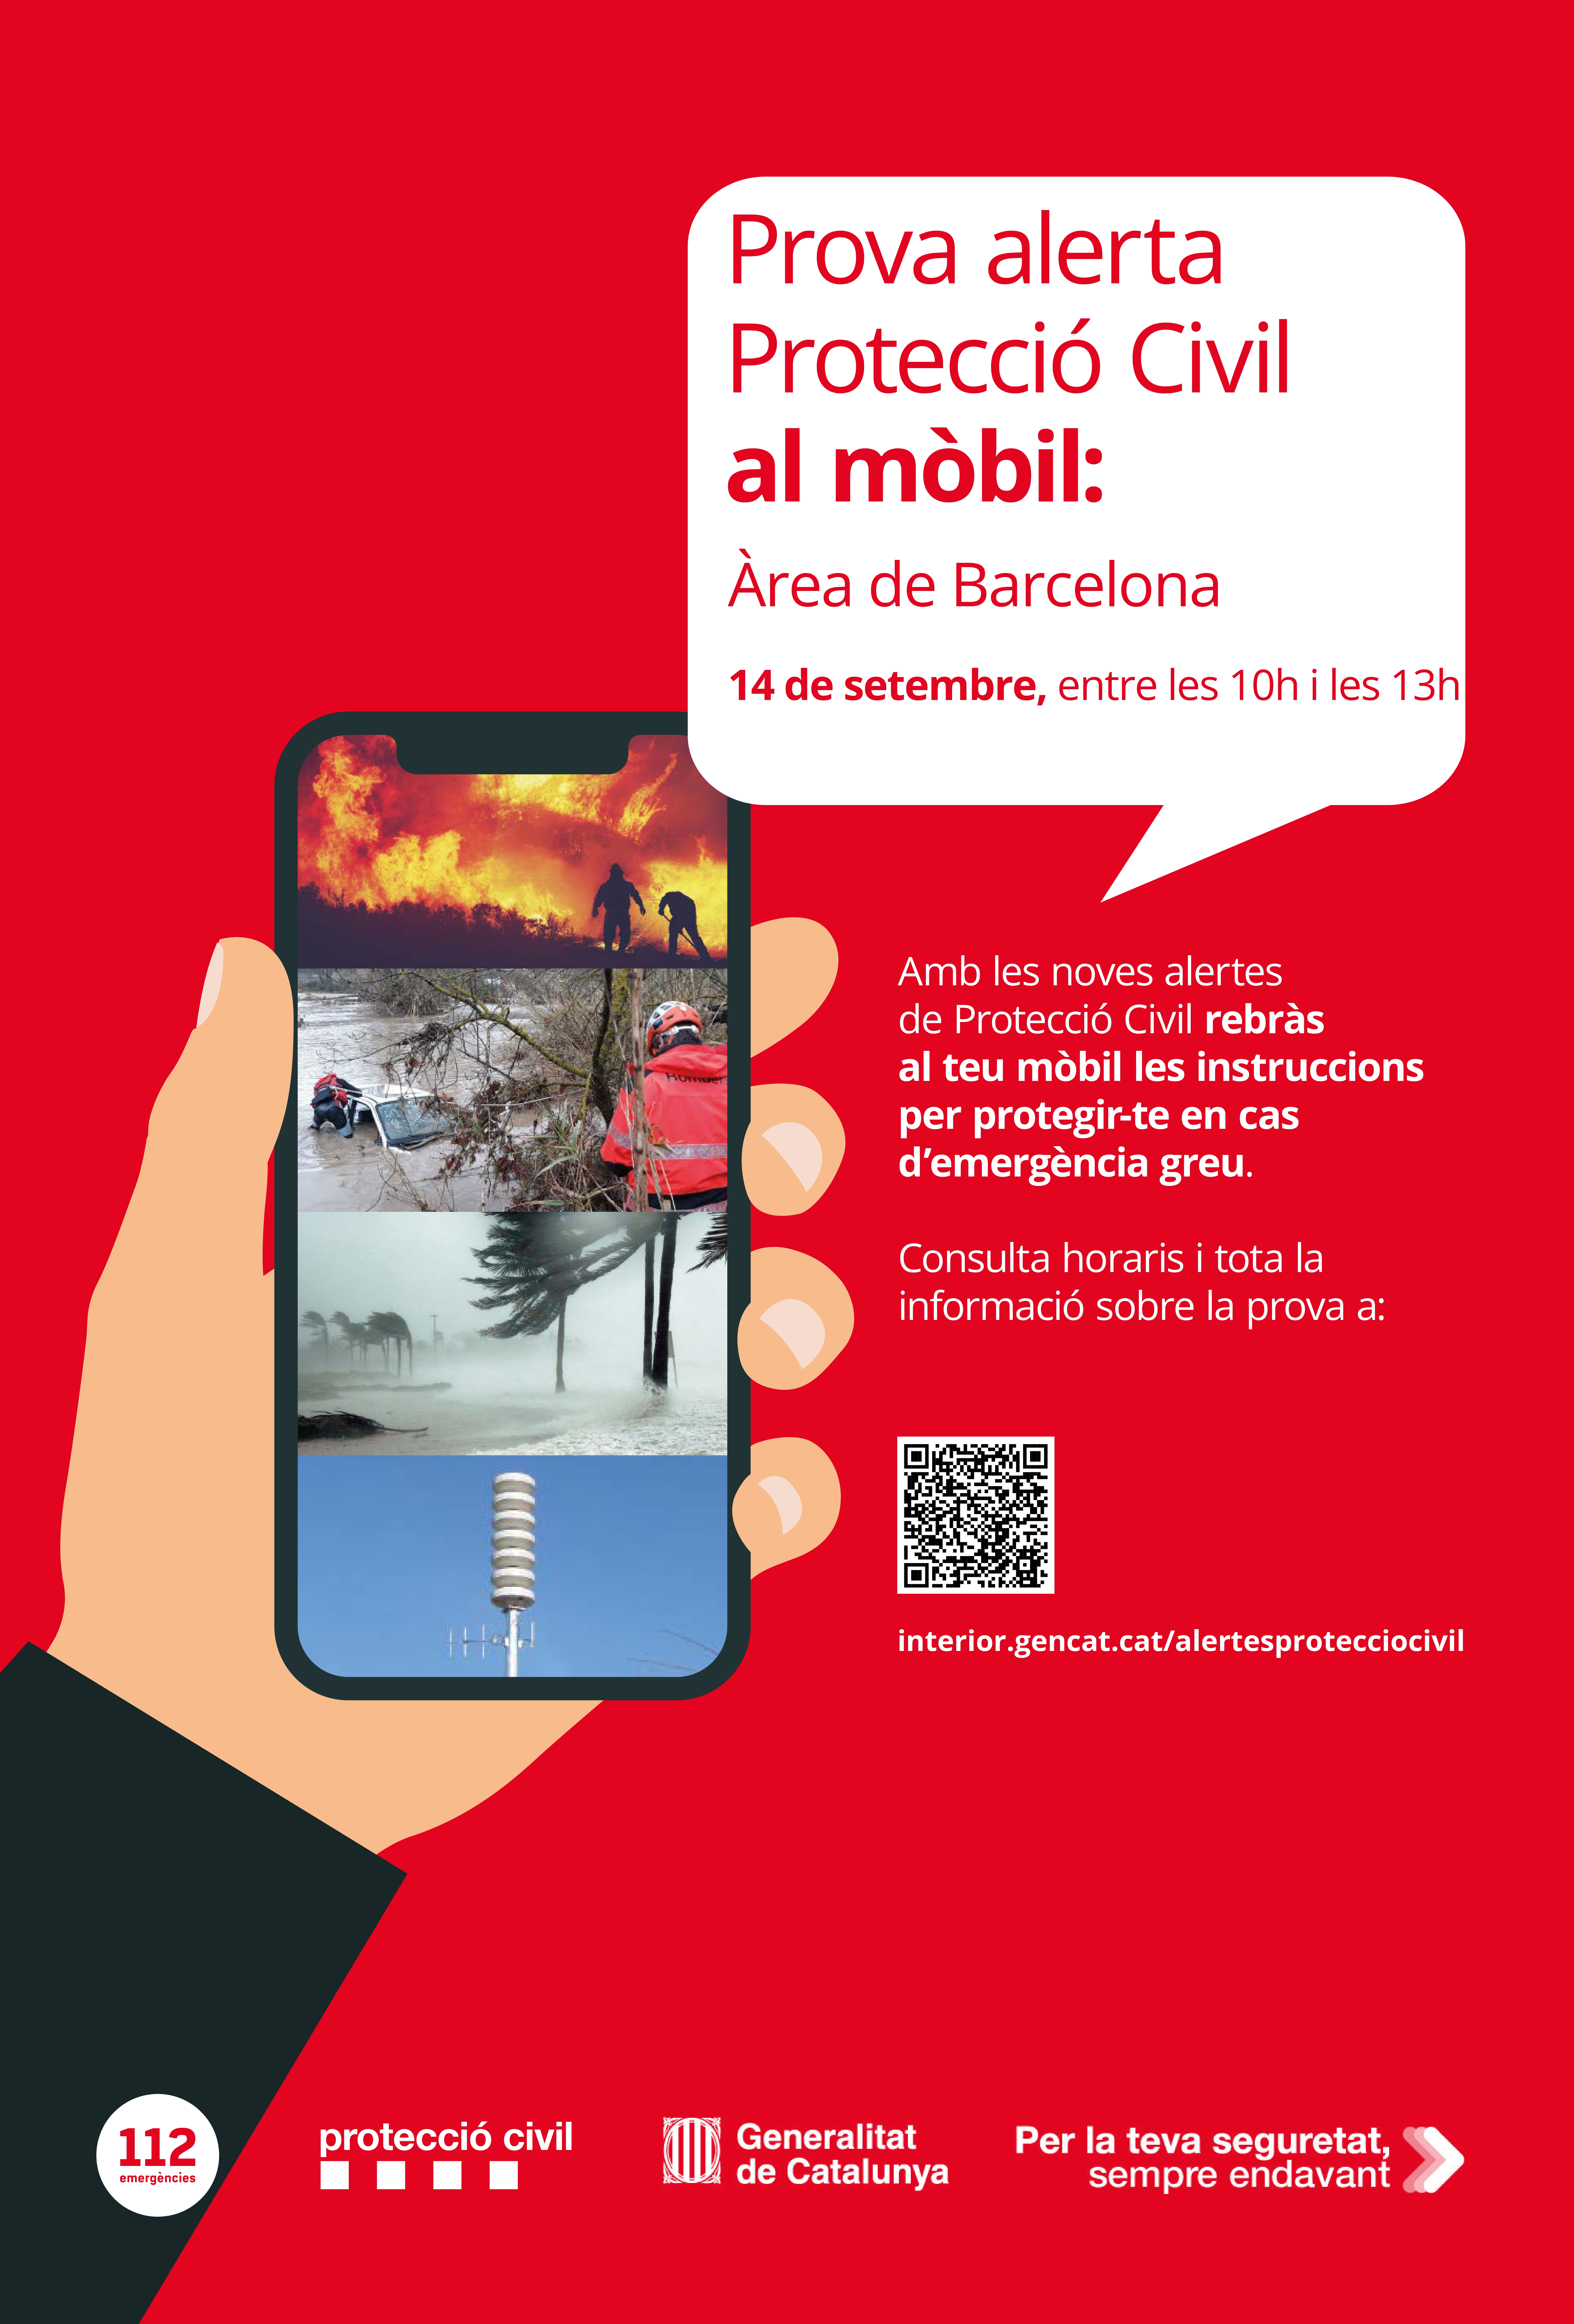 Protecció Civil de la Generalitat de Catalunya enviarà aquest dijous la prova d’alertes al mòbil